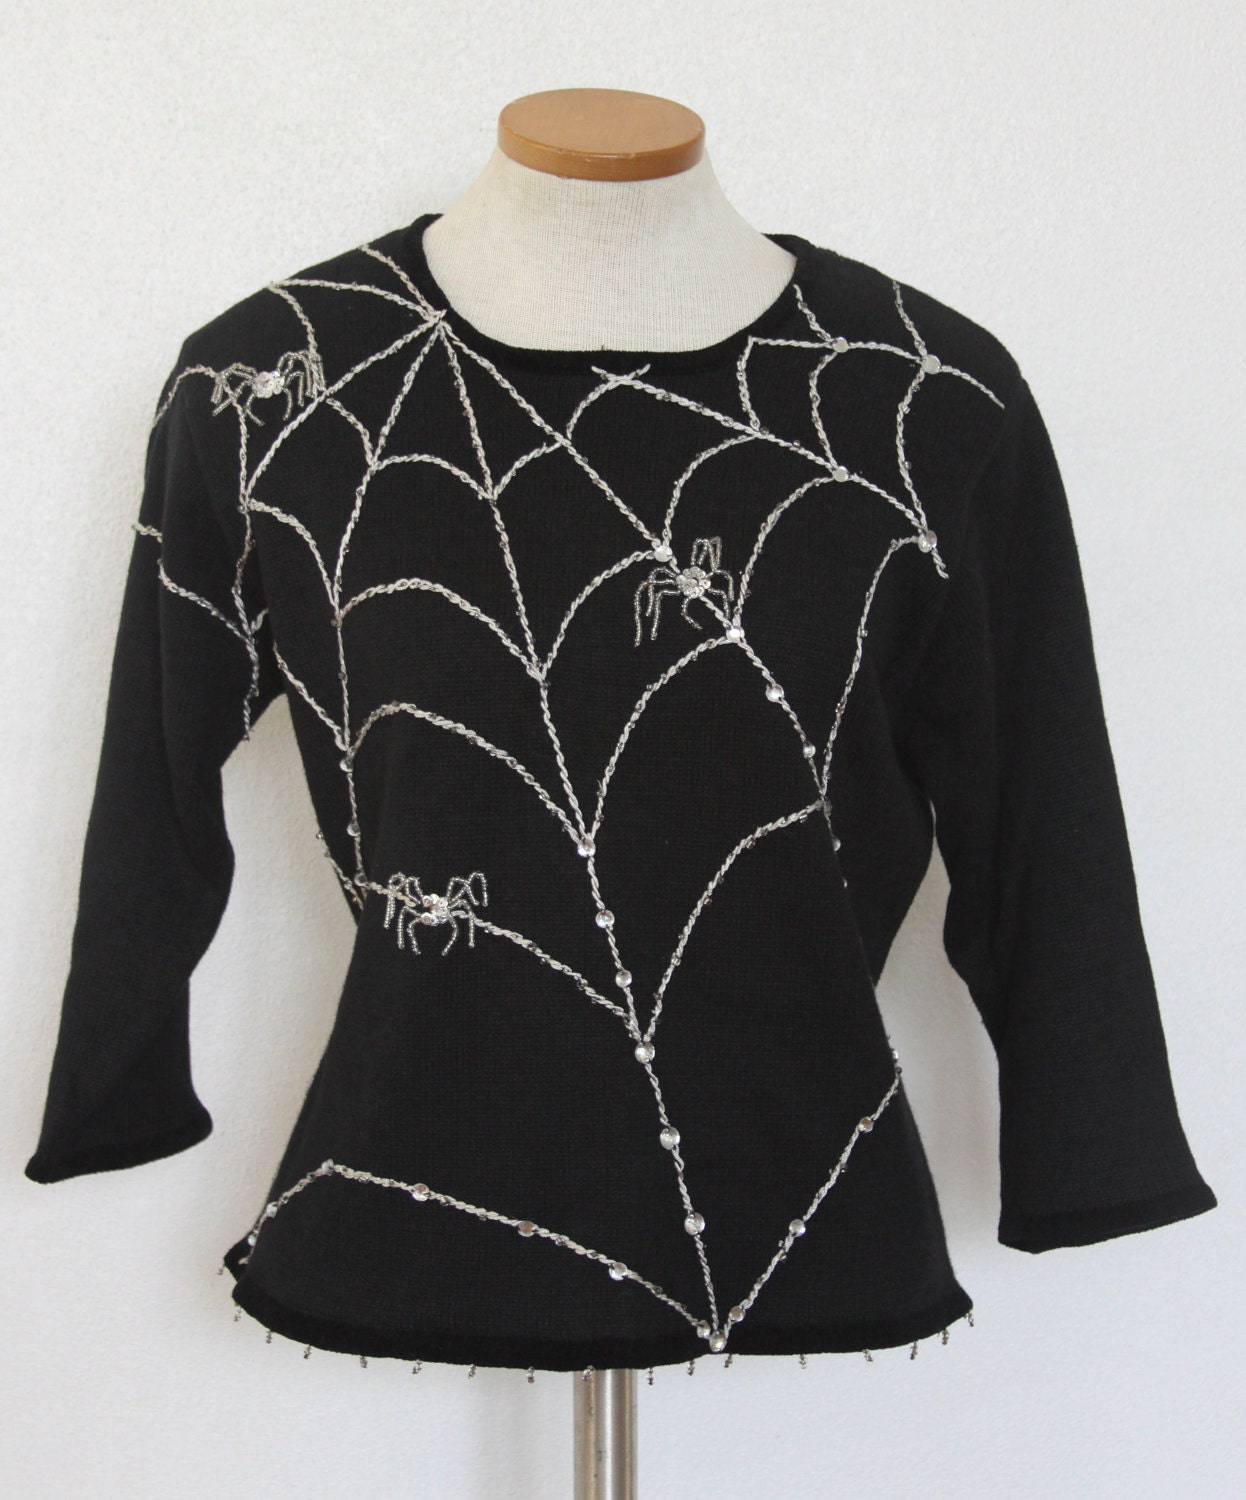 spider sweater